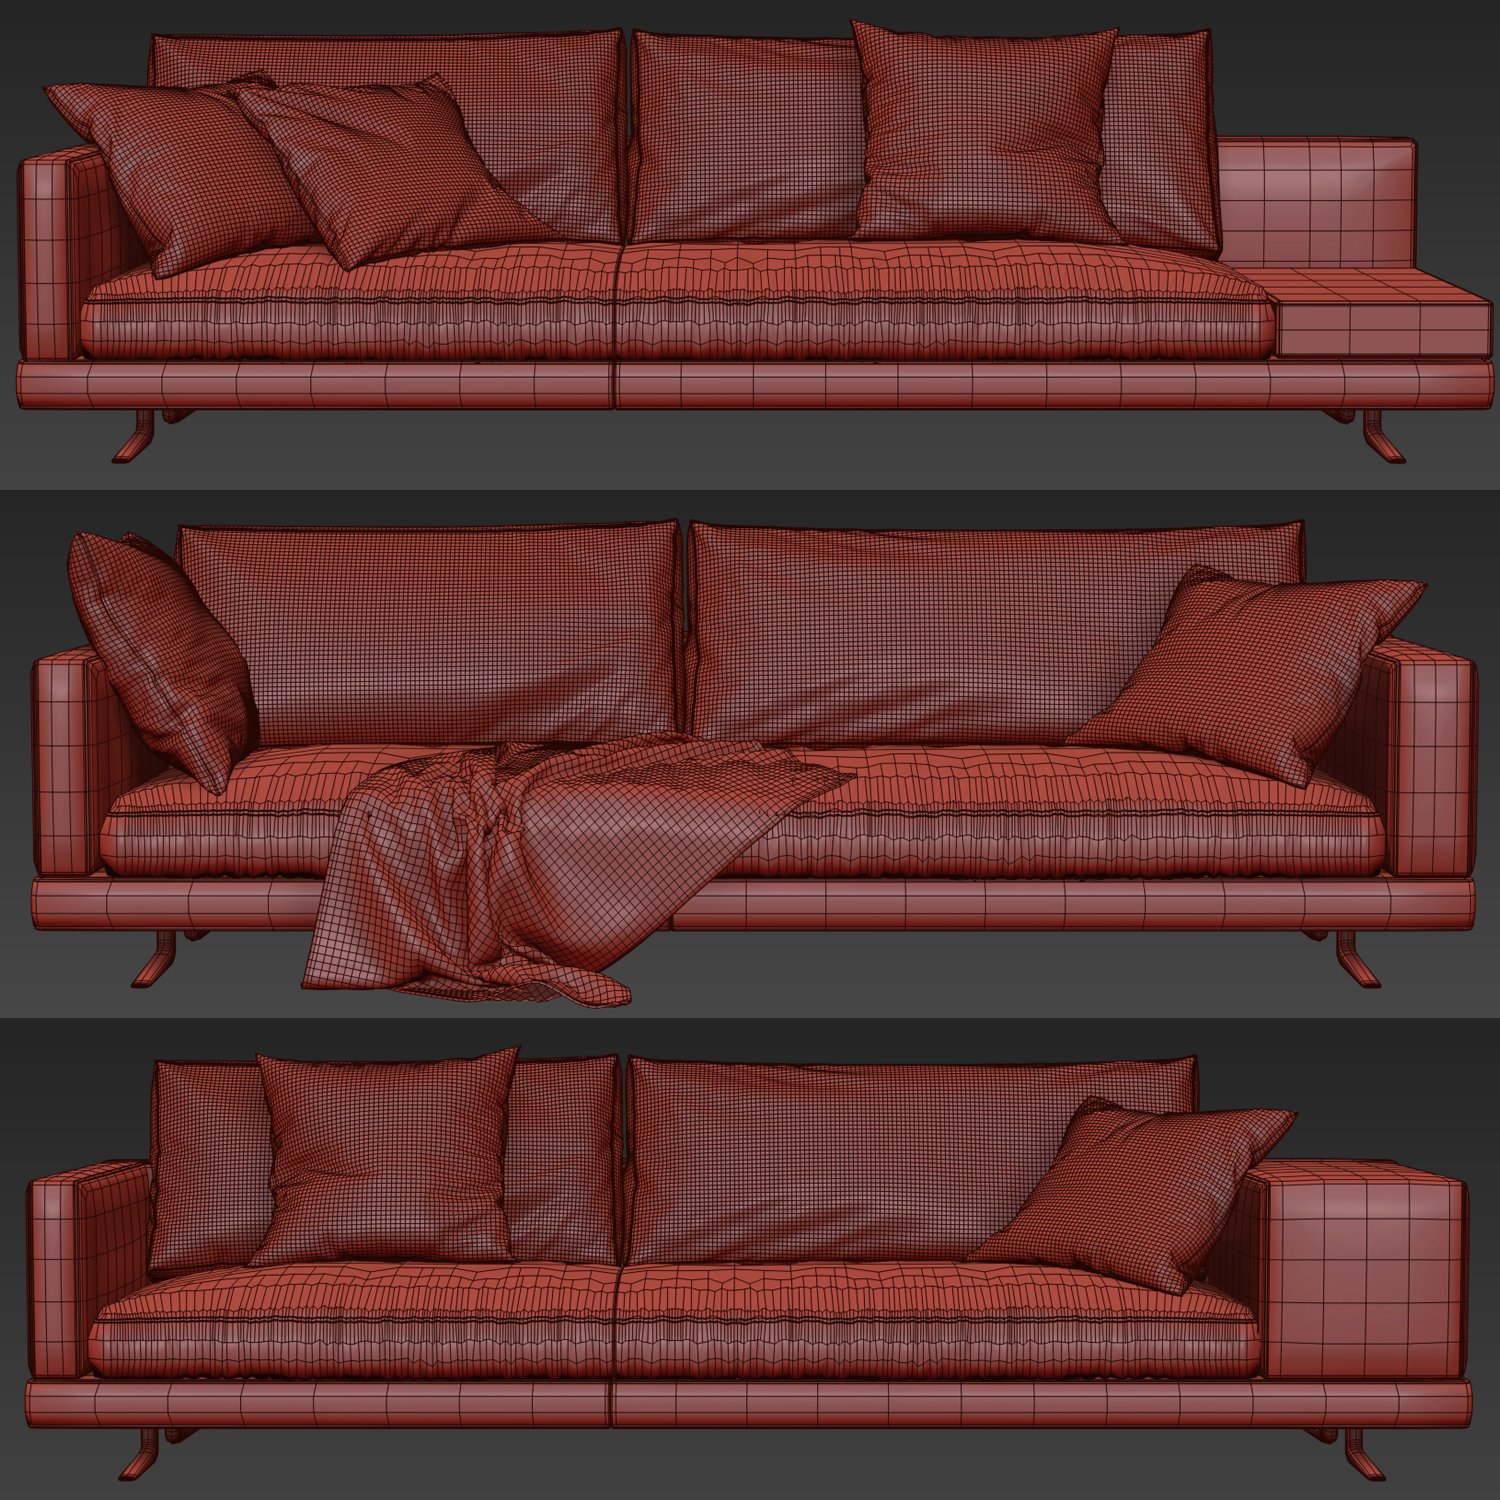 Poliform Mondrian Sofa Free 3d Model 3ds Max 3dart